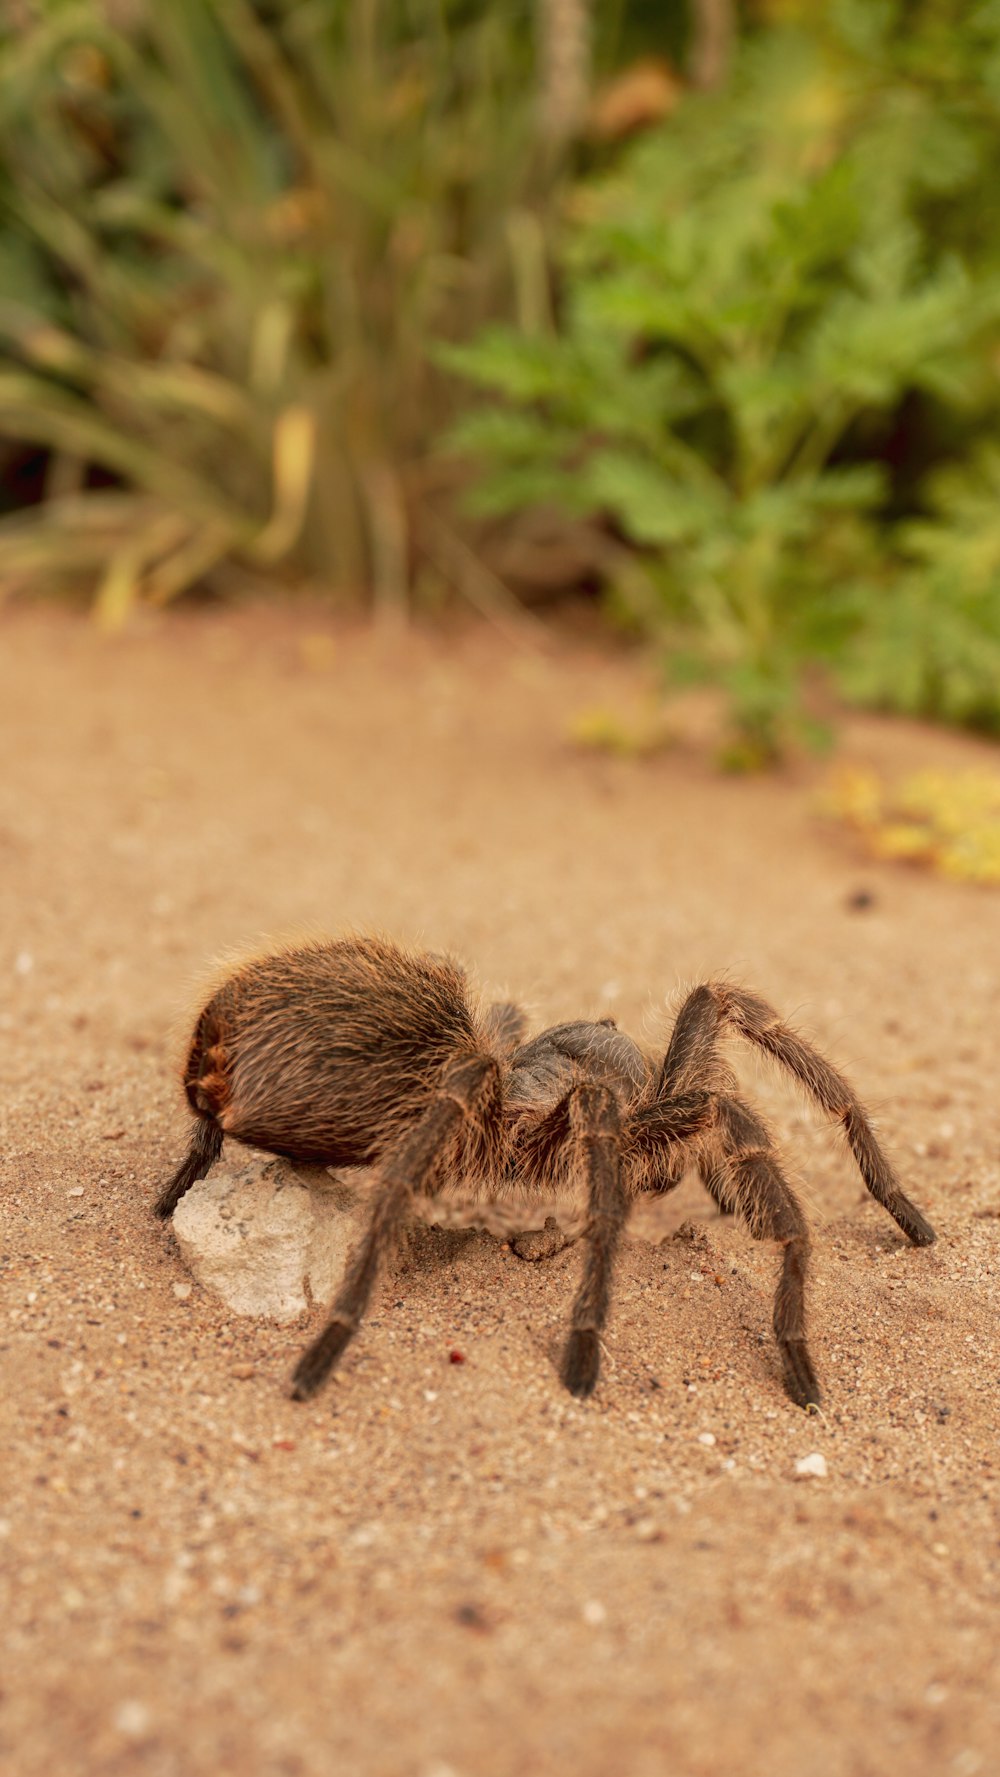 brown tarantula on brown soil